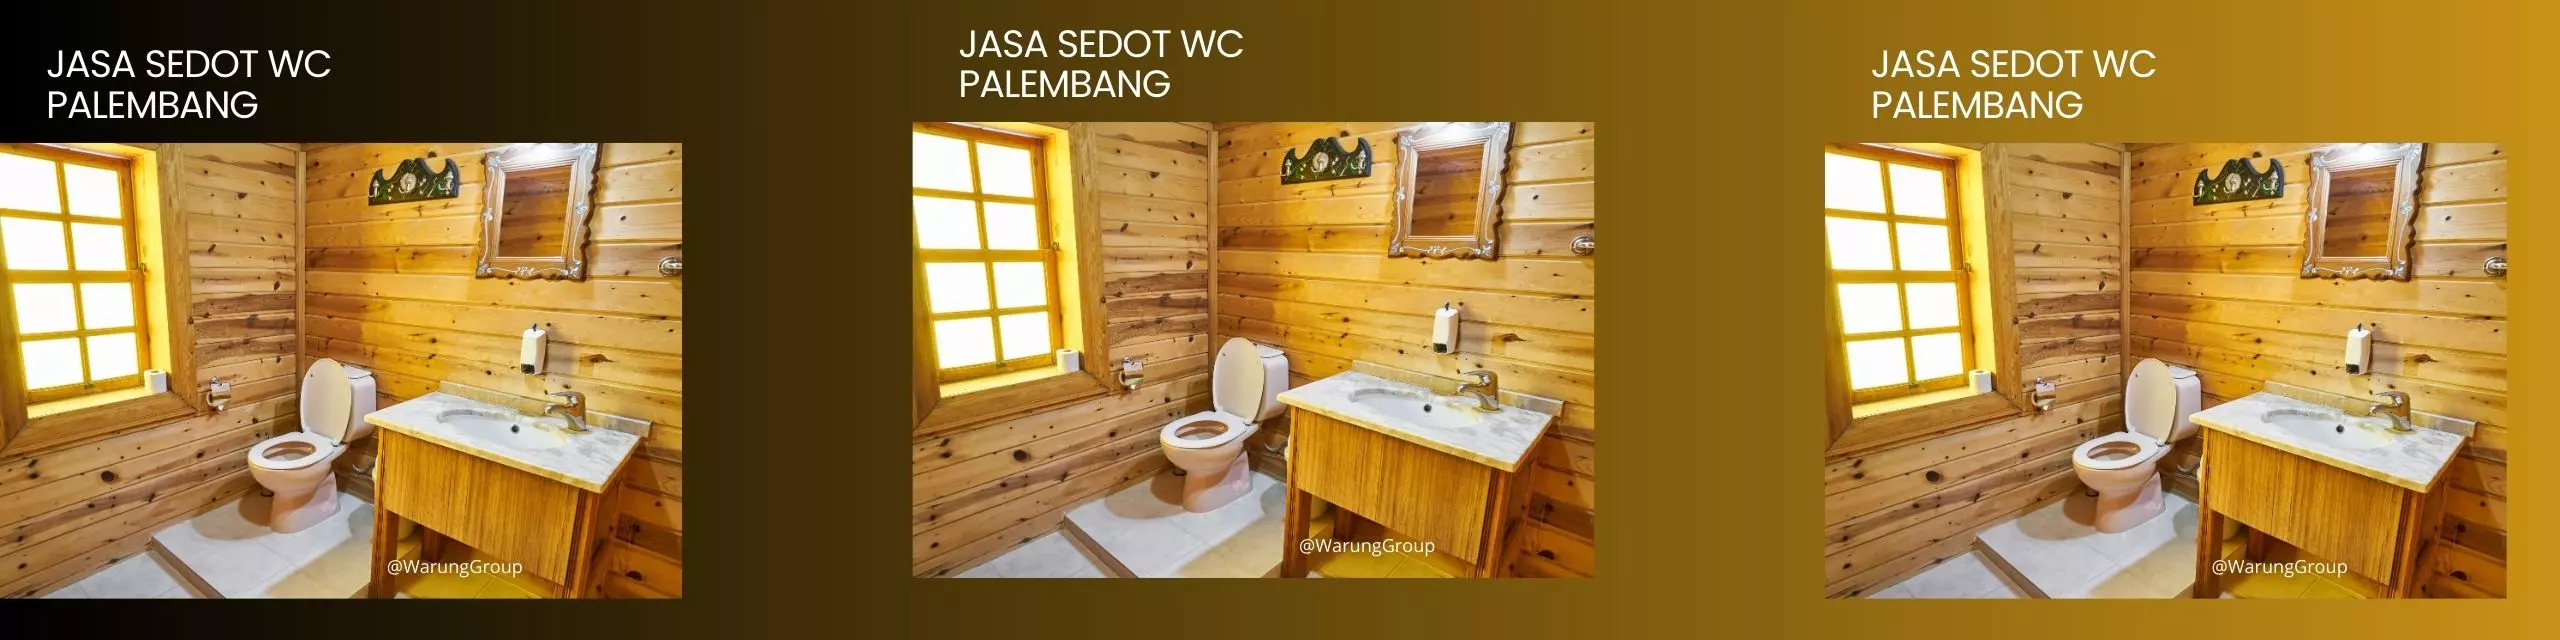 Jasa Sedot WC Palembang